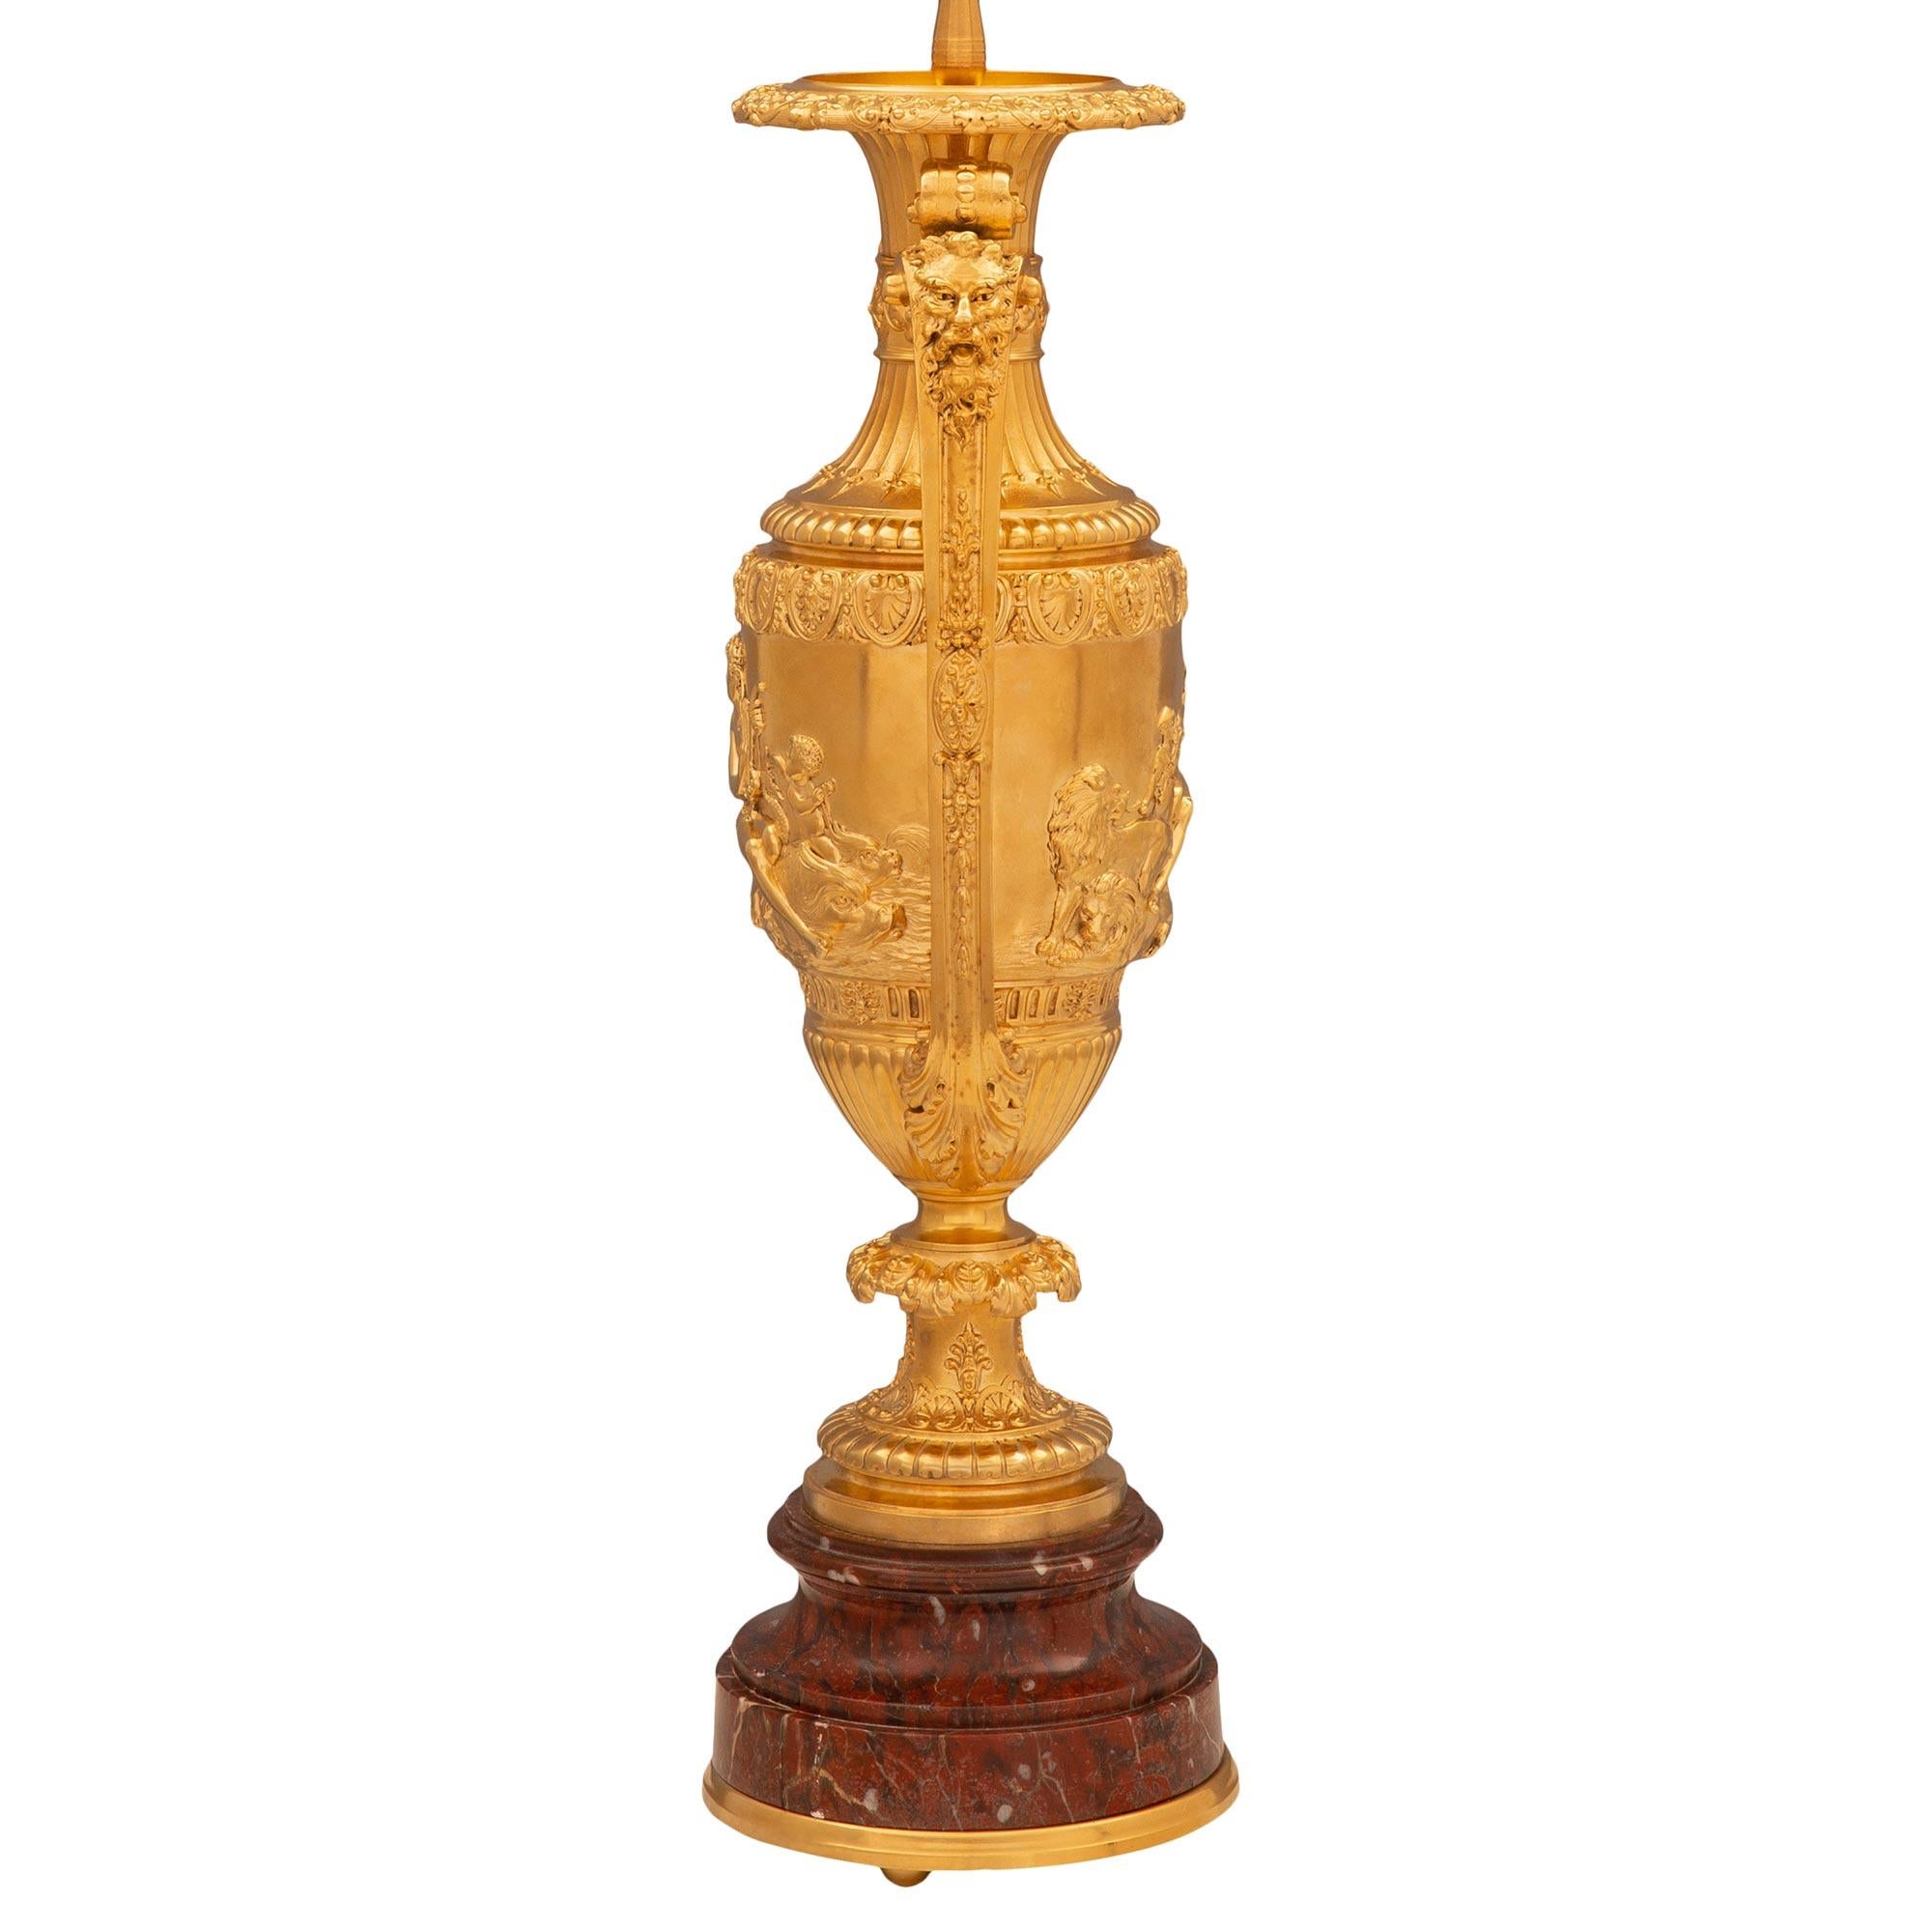 Paire de lampes en marbre Rouge Griotte et bronze doré de la Renaissance française du 19ème siècle. Chaque lampe est surélevée par une base circulaire en marbre Rouge Griotte avec une bordure mouchetée et une fine bande inférieure en bronze doré